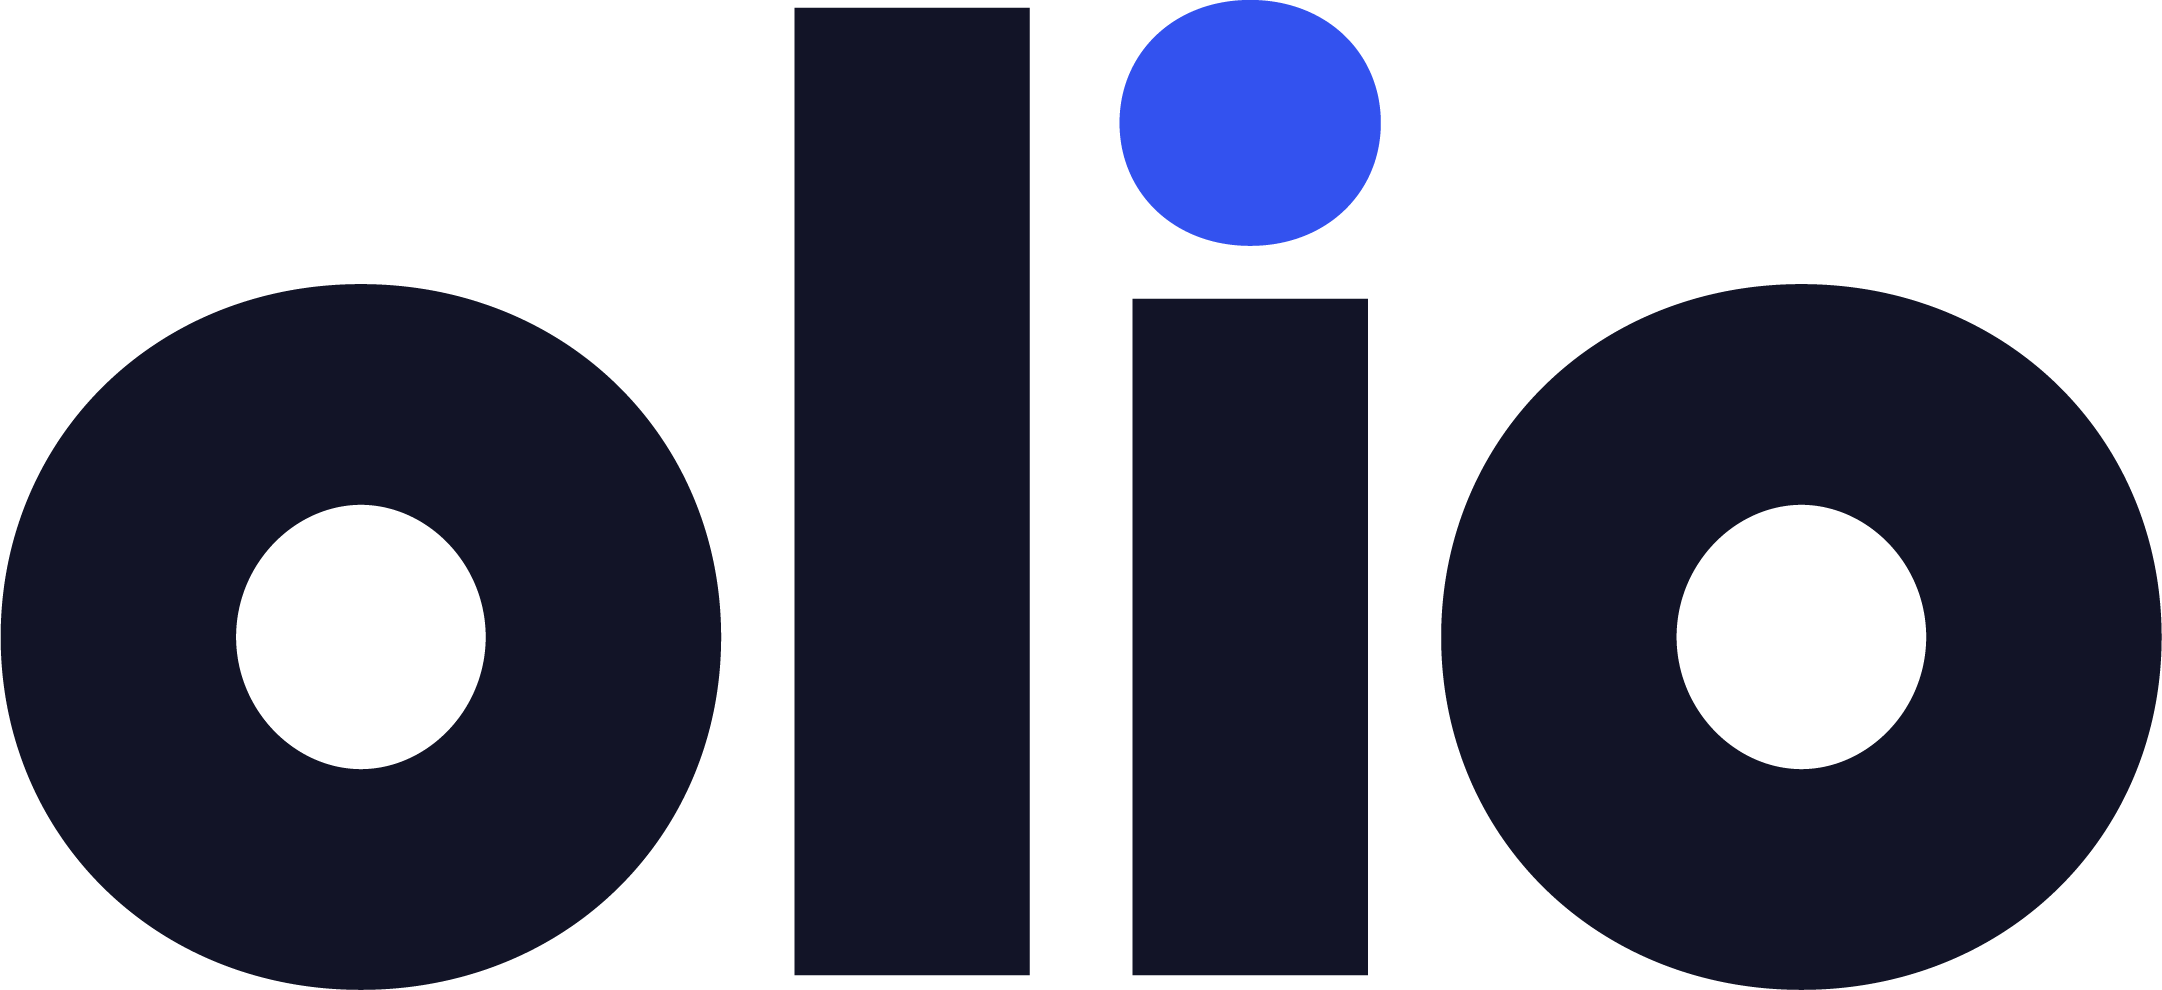 Olio logo black and blue